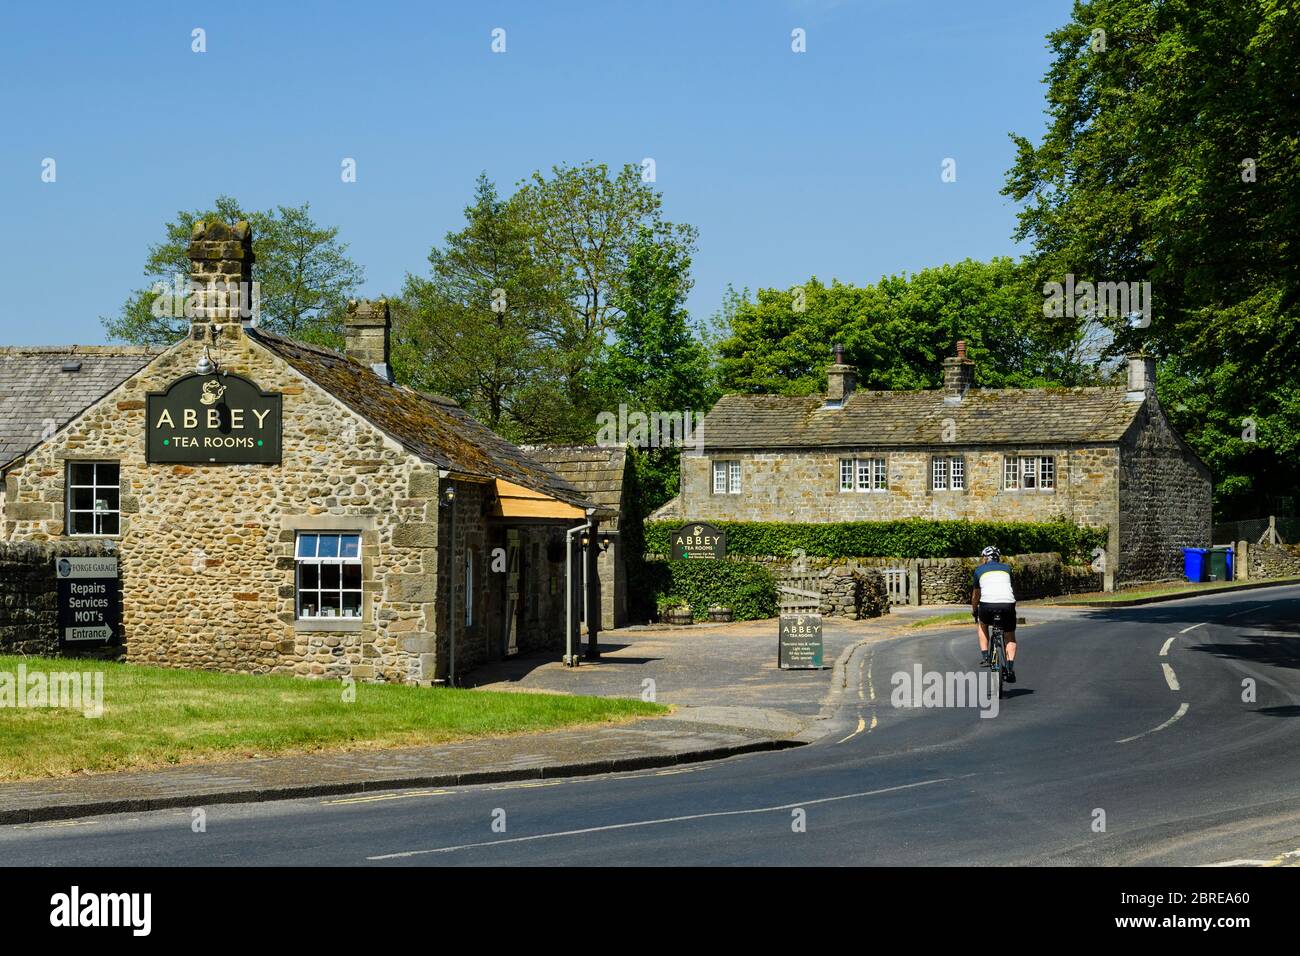 1 cycliste à vélo, vélo sur la route de campagne, après le café pittoresque des salons de thé dans le village rural pittoresque ensoleillé - Bolton Abbey, North Yorkshire, Angleterre, Royaume-Uni Banque D'Images